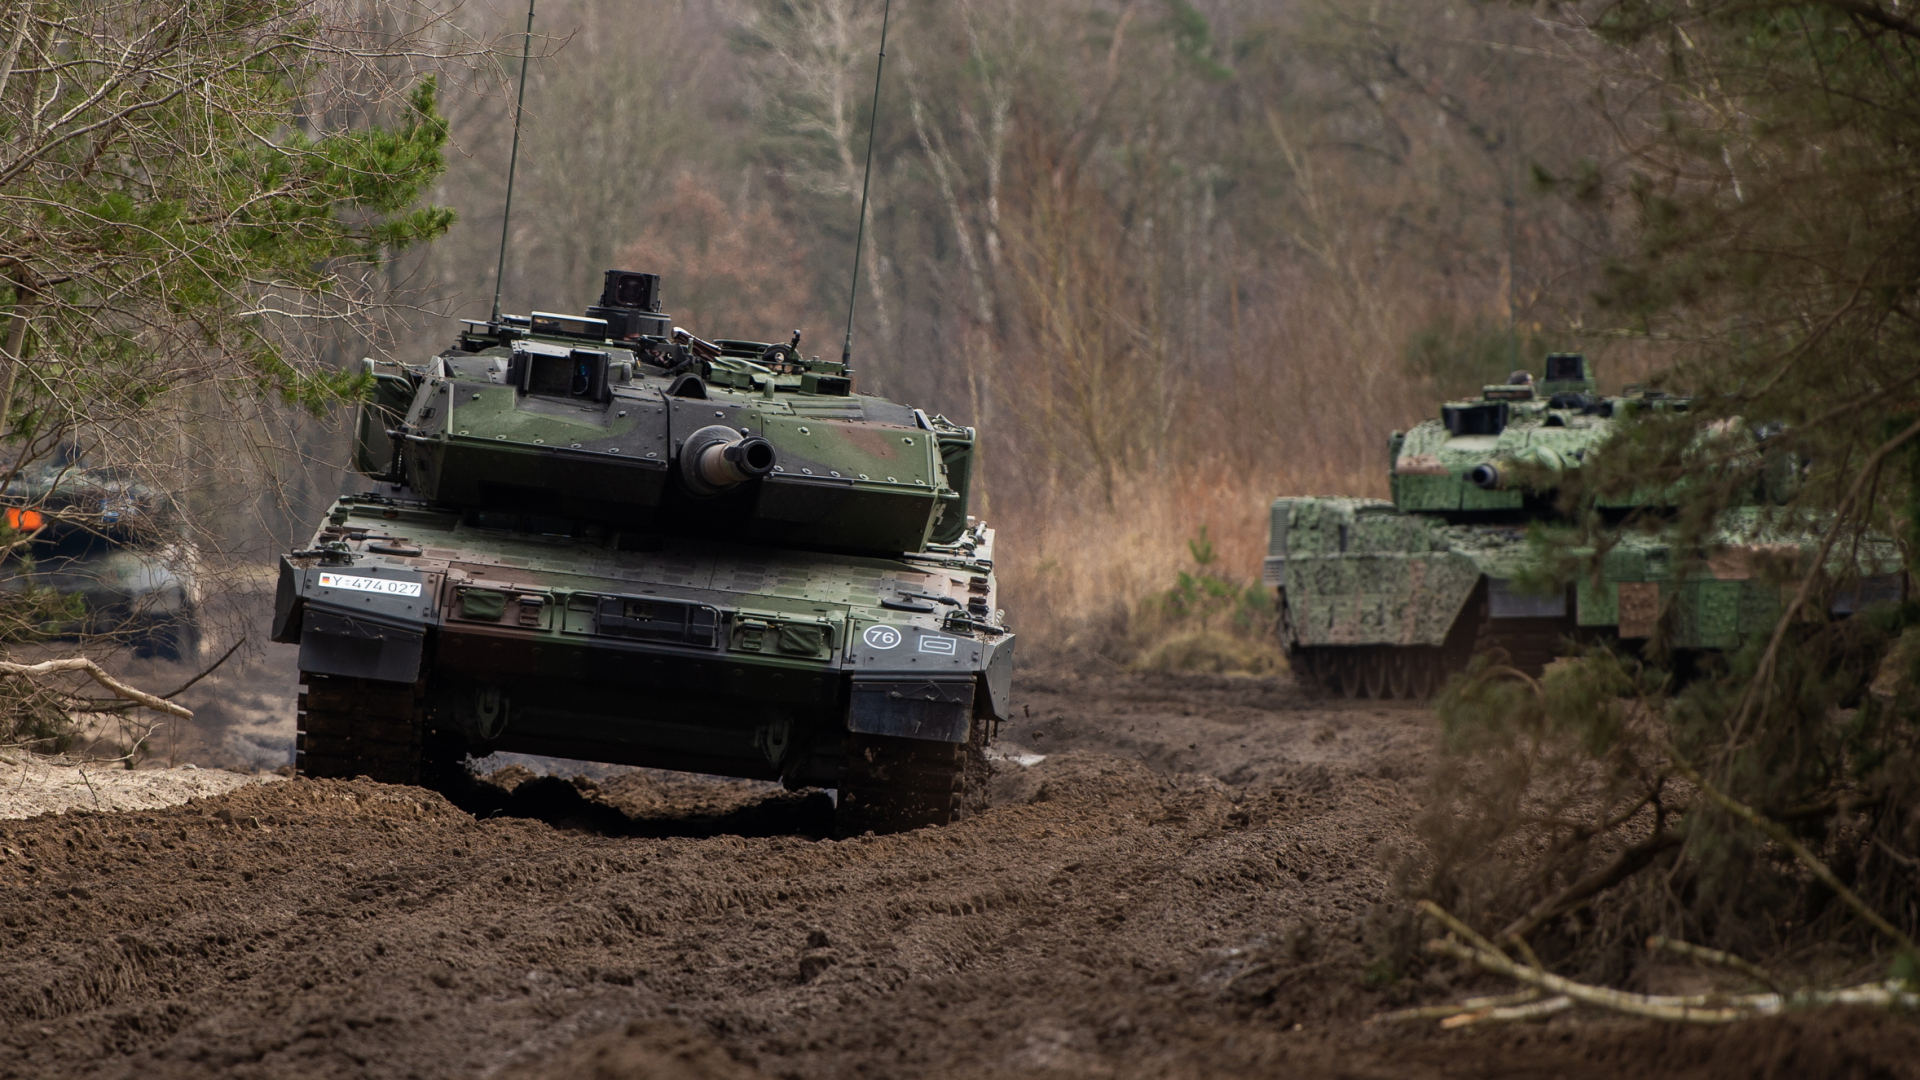 Ein Kampfpanzer der Typs Leopard 2 fährt bei einer Übung der Bundeswehr durch das Gelände | dpa